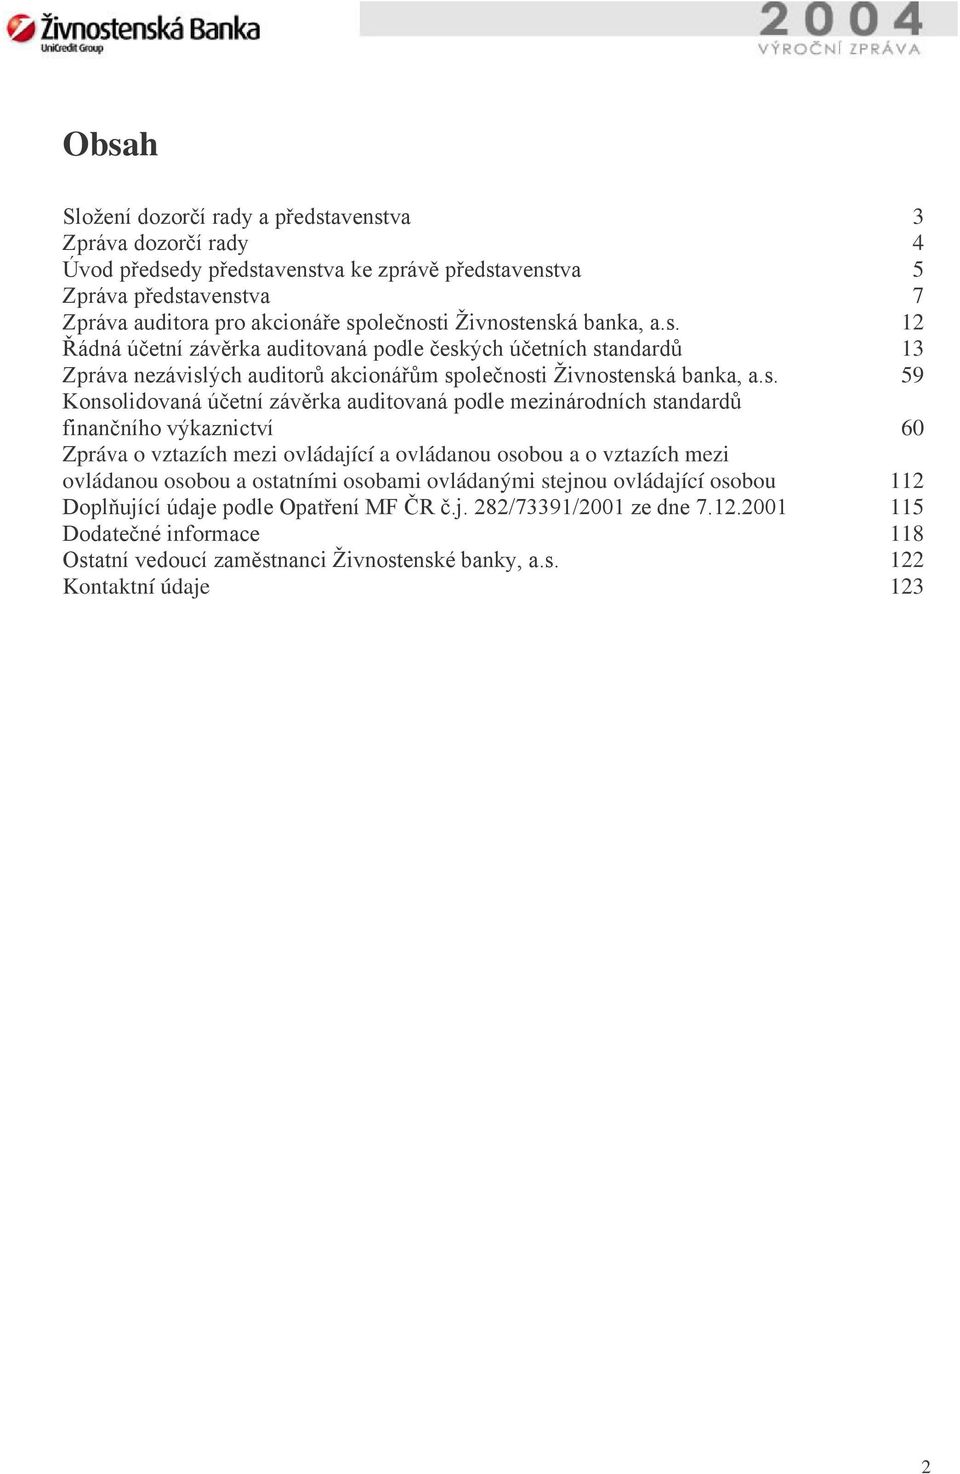 enská banka, a.s. 12 Řádná účetní závěrka auditovaná podle českých účetních standardů 13 Zpráva nezávislých auditorů akcionářům společnosti enská banka, a.s. 59 Konsolidovaná účetní závěrka